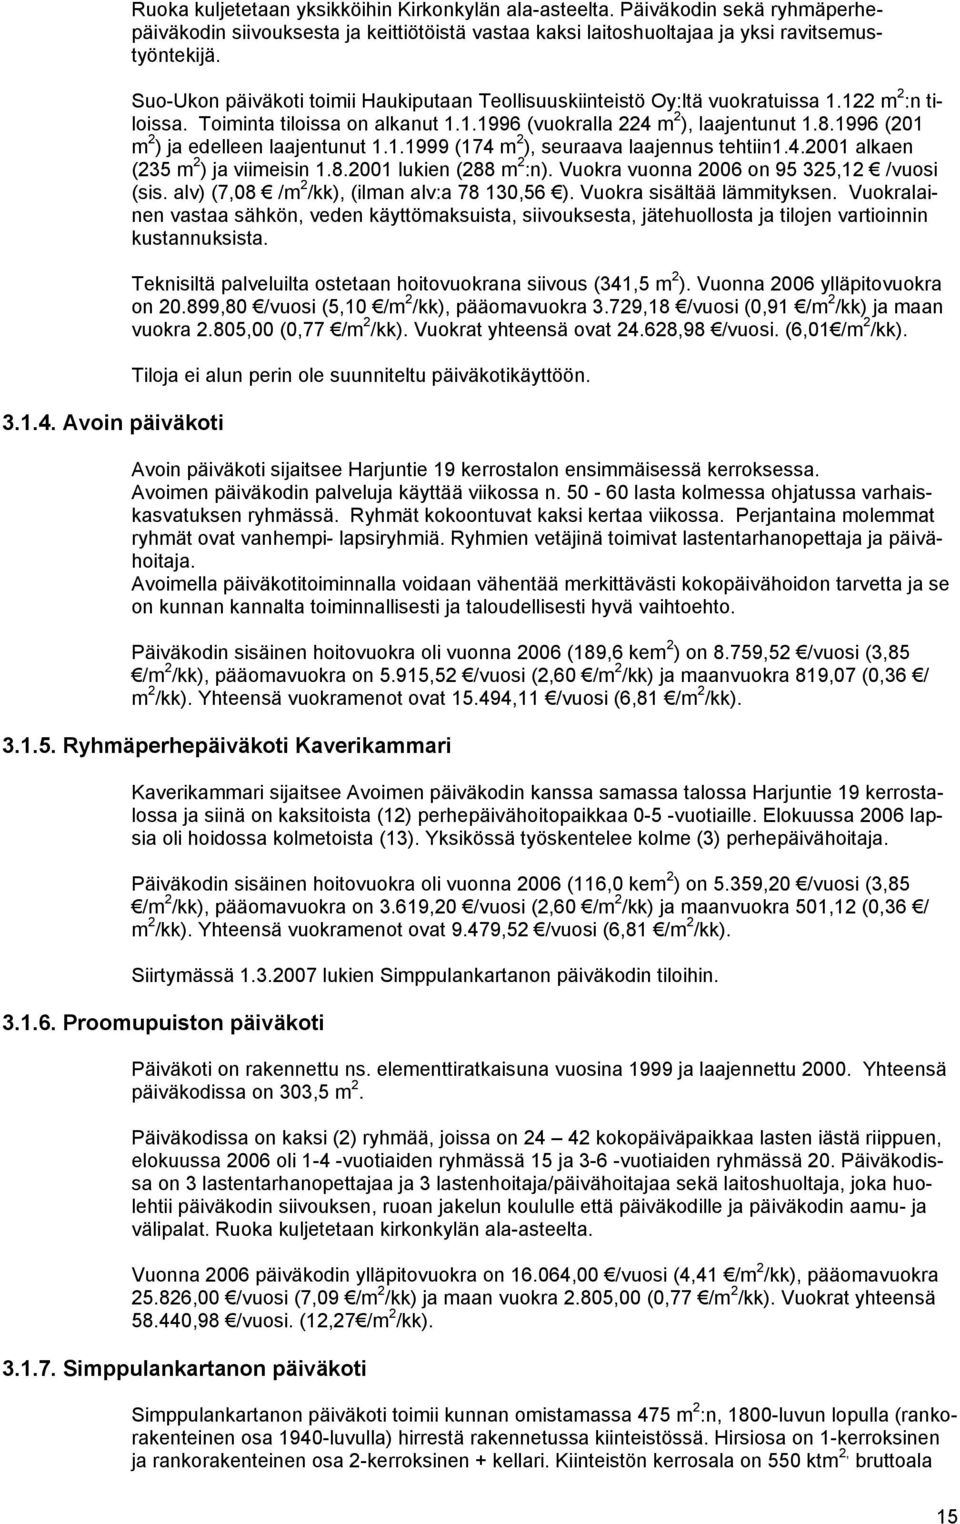 Suo-Ukon päiväkoti toimii Haukiputaan Teollisuuskiinteistö Oy:ltä vuokratuissa 1.122 m 2 :n tiloissa. Toiminta tiloissa on alkanut 1.1.1996 (vuokralla 224 m 2 ), laajentunut 1.8.